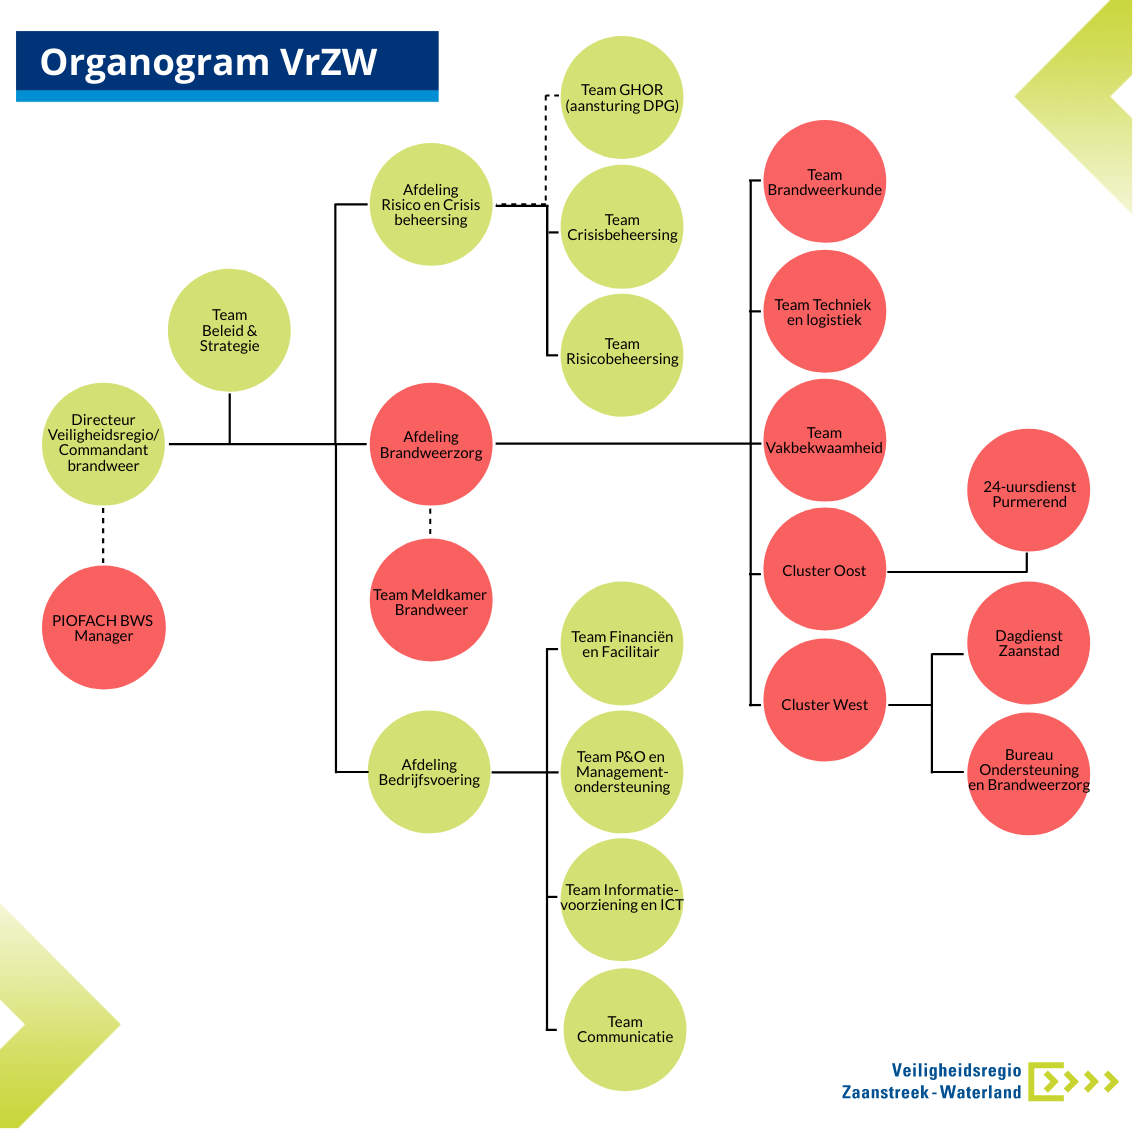 Organogram van de organisatie